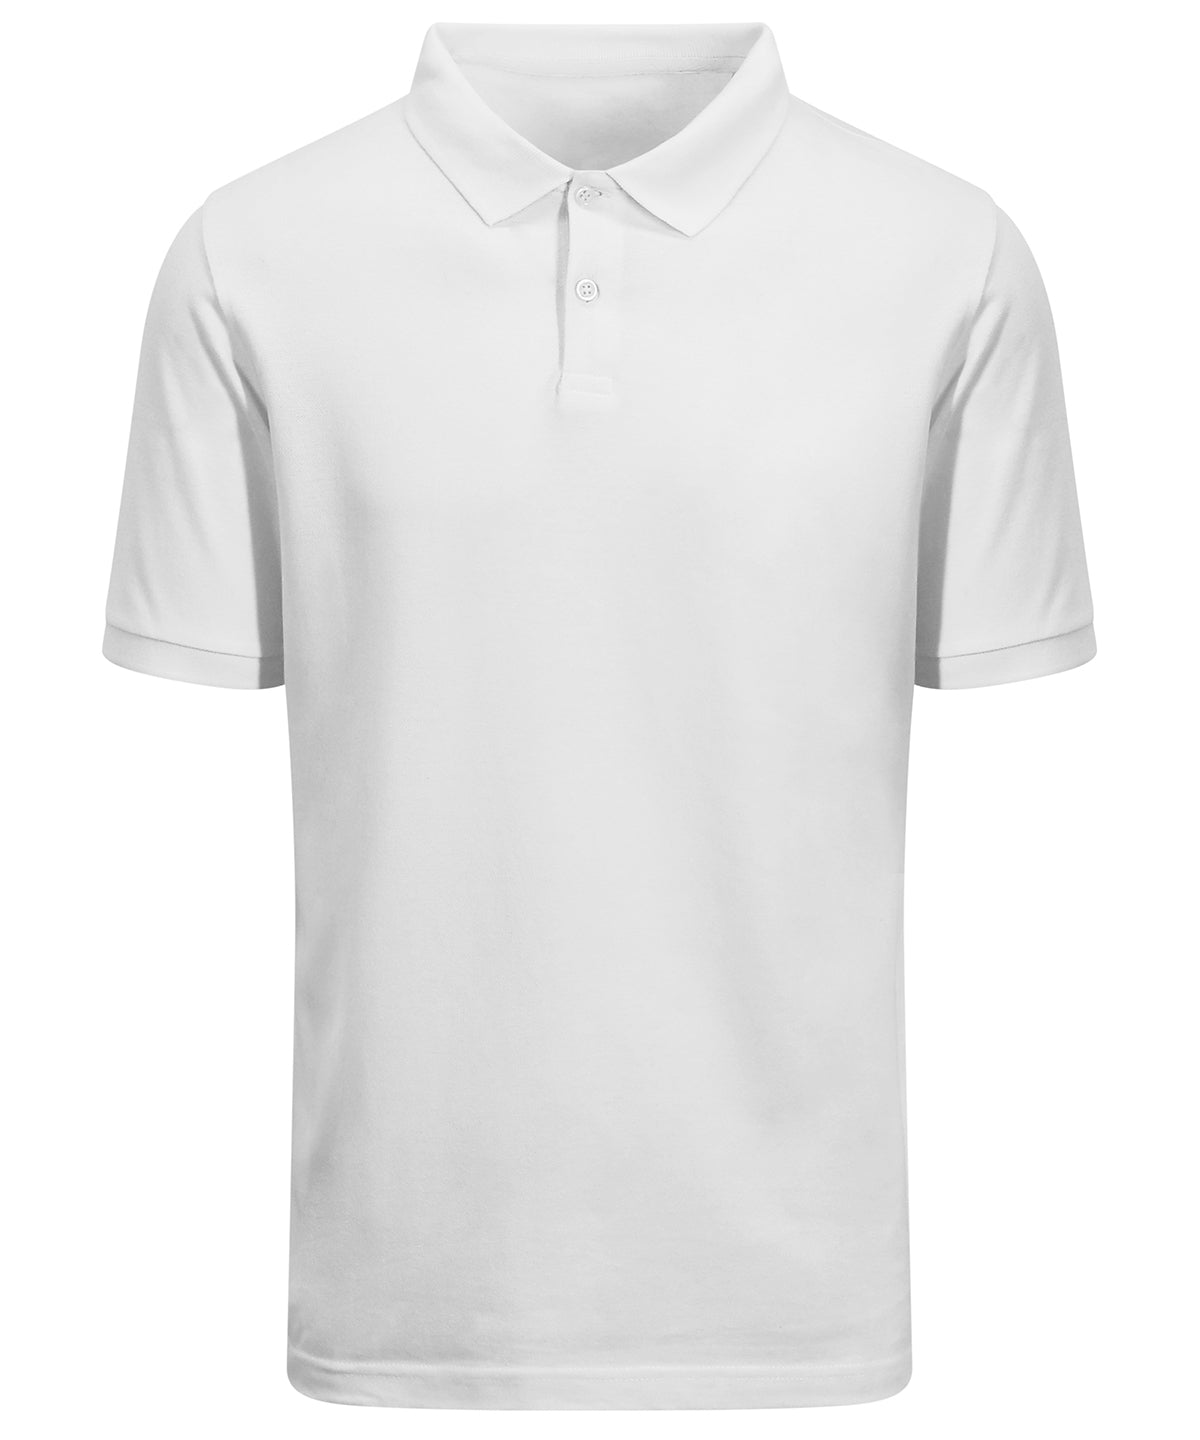 Personalised Polo Shirts - White AWDis Ecologie Etosha organic polo shirt